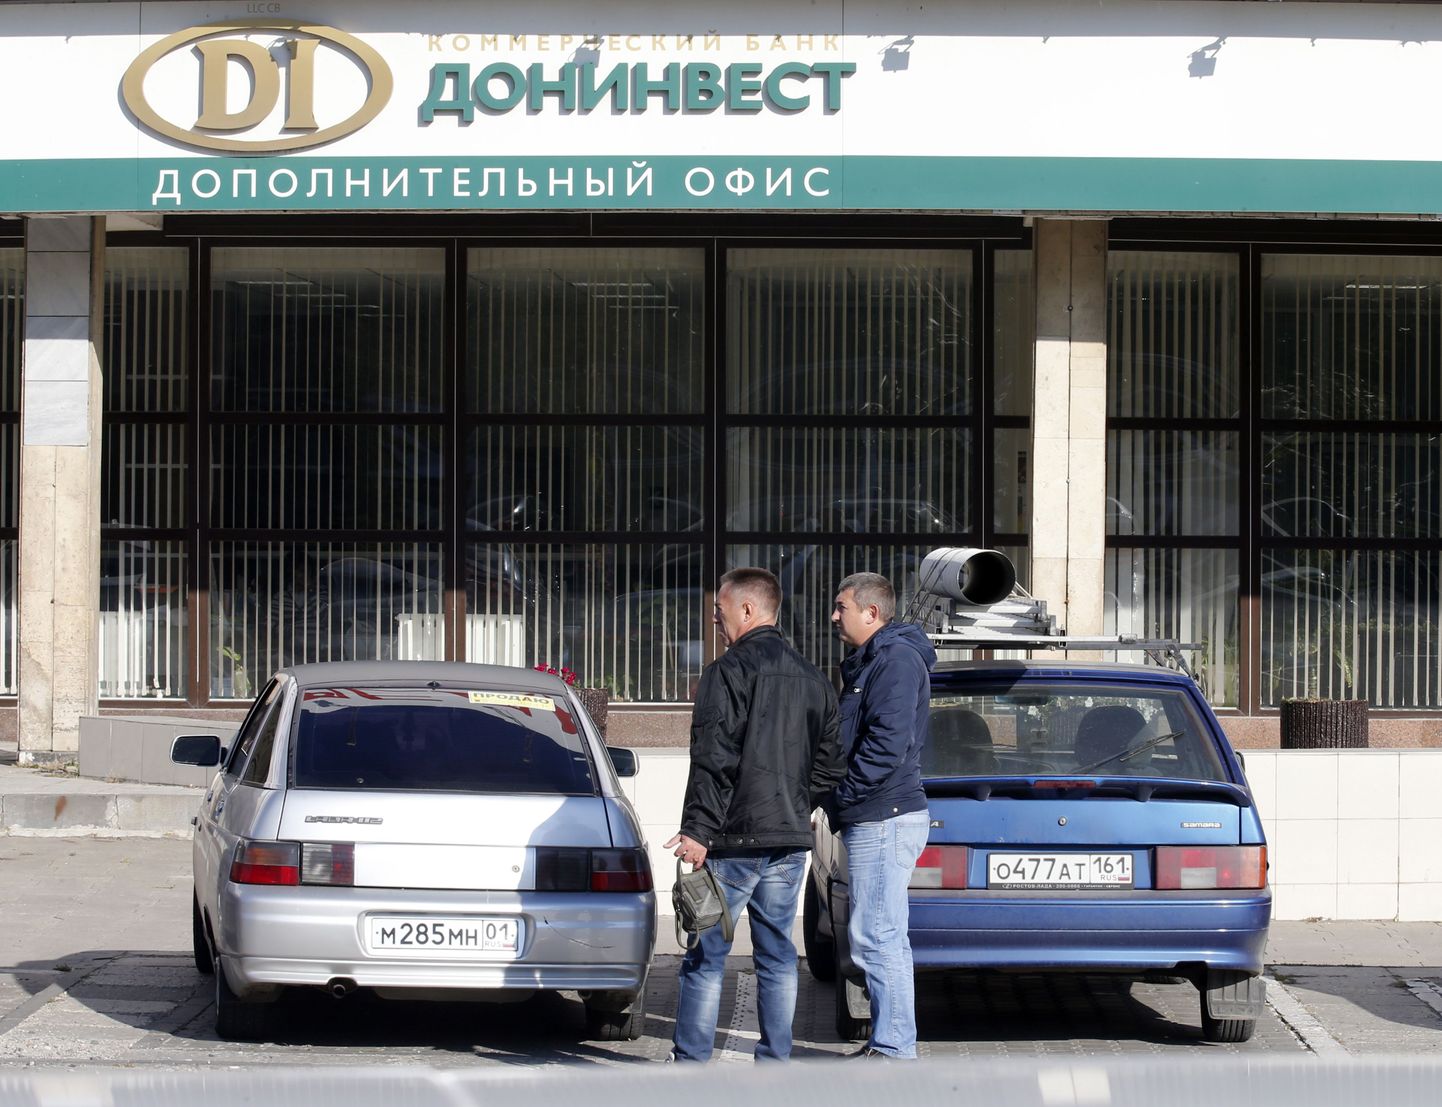 Vene panga Doninvest filiaal Rostovis Doni ääres. Pank jäi mullu tegevusloast ilma ja pankrotistus; selle üks omanik oli Alexandr Grigoryev.